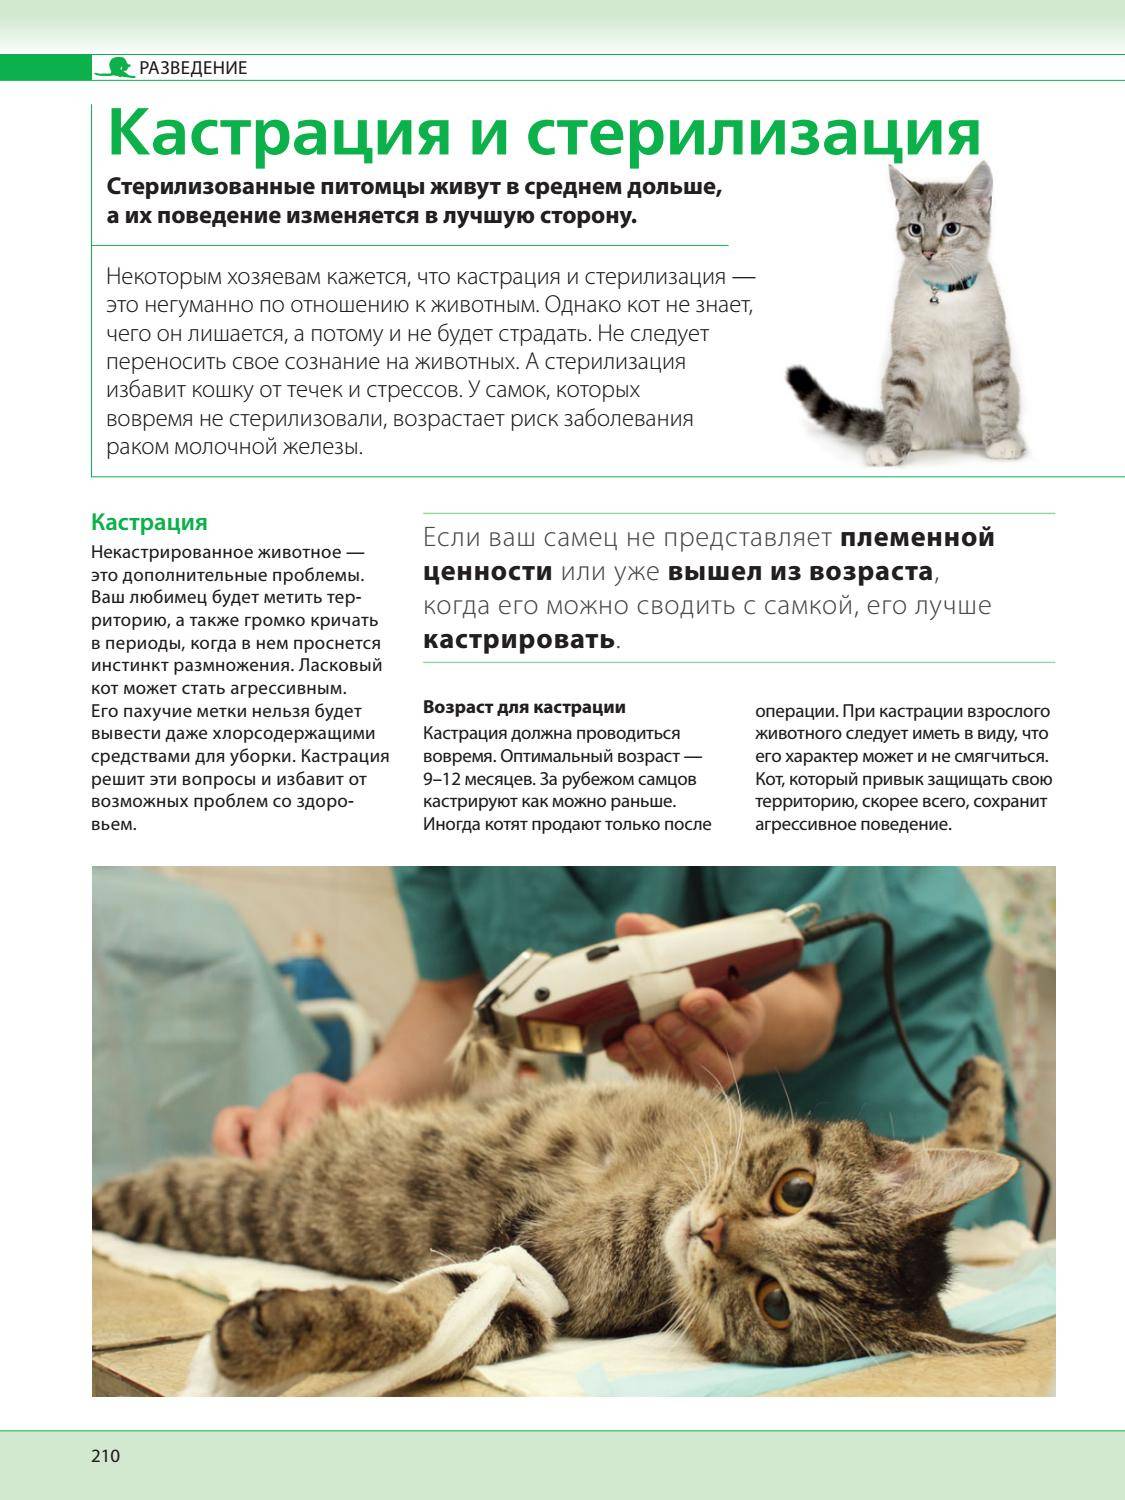 Кастрировать ли кота - доводы за и против кастрации, вред и польза от процедуры